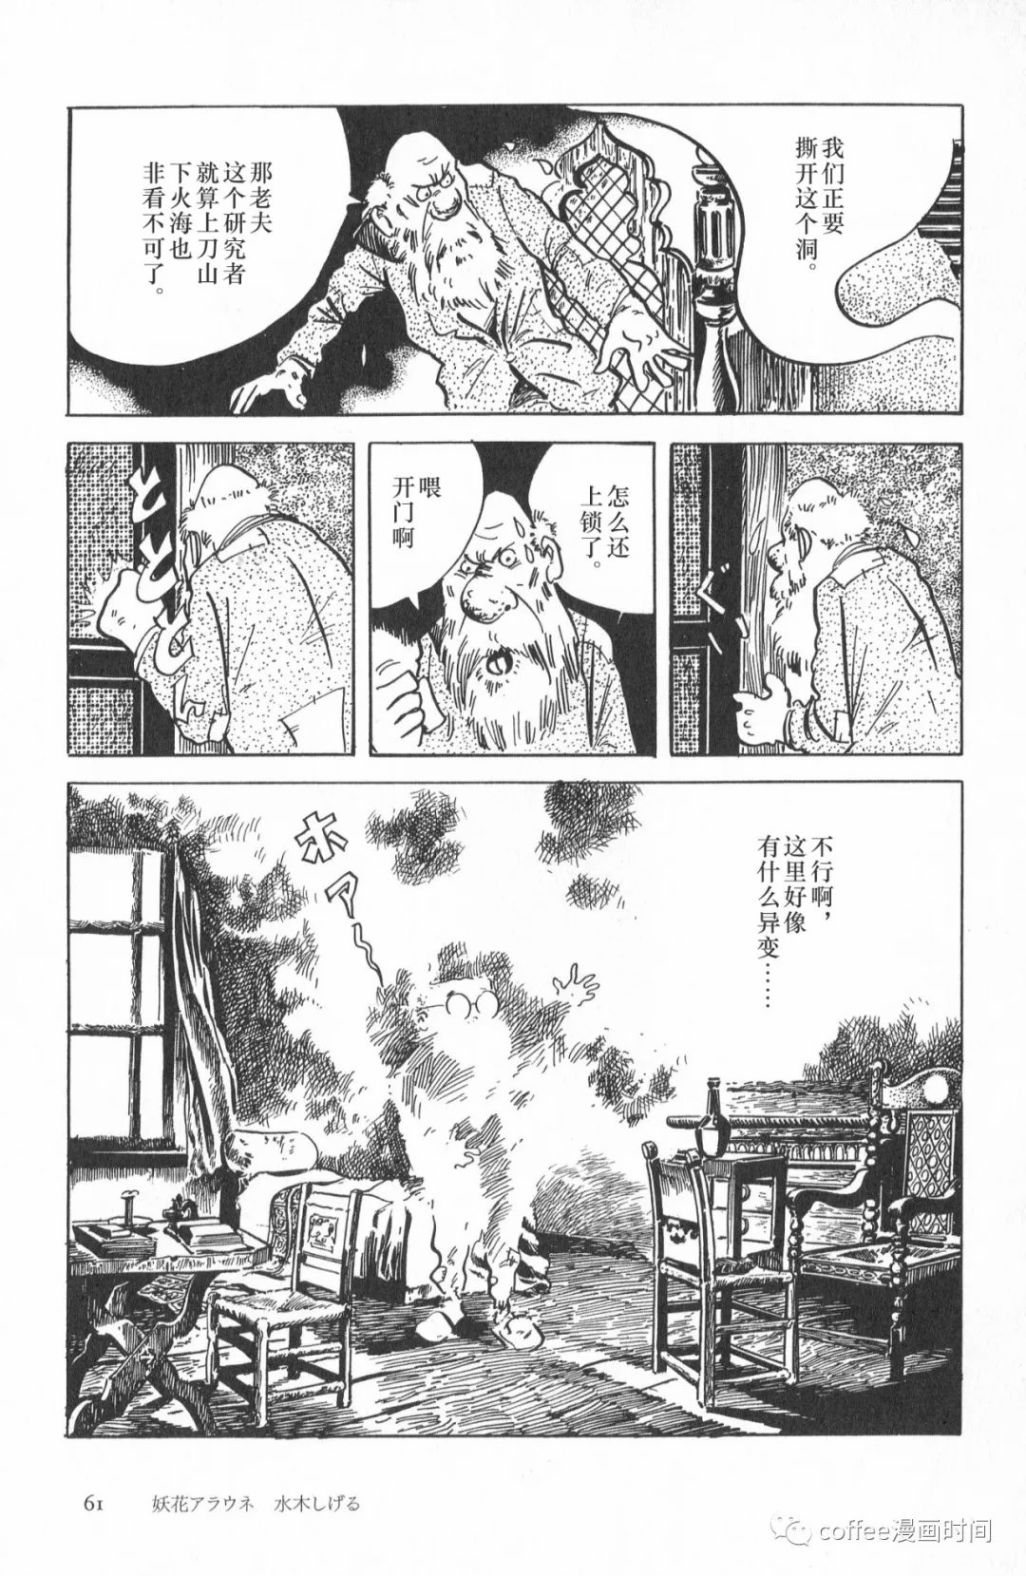 日本短篇漫畫傑作集 - 水木茂《妖花愛娜溫》 - 3